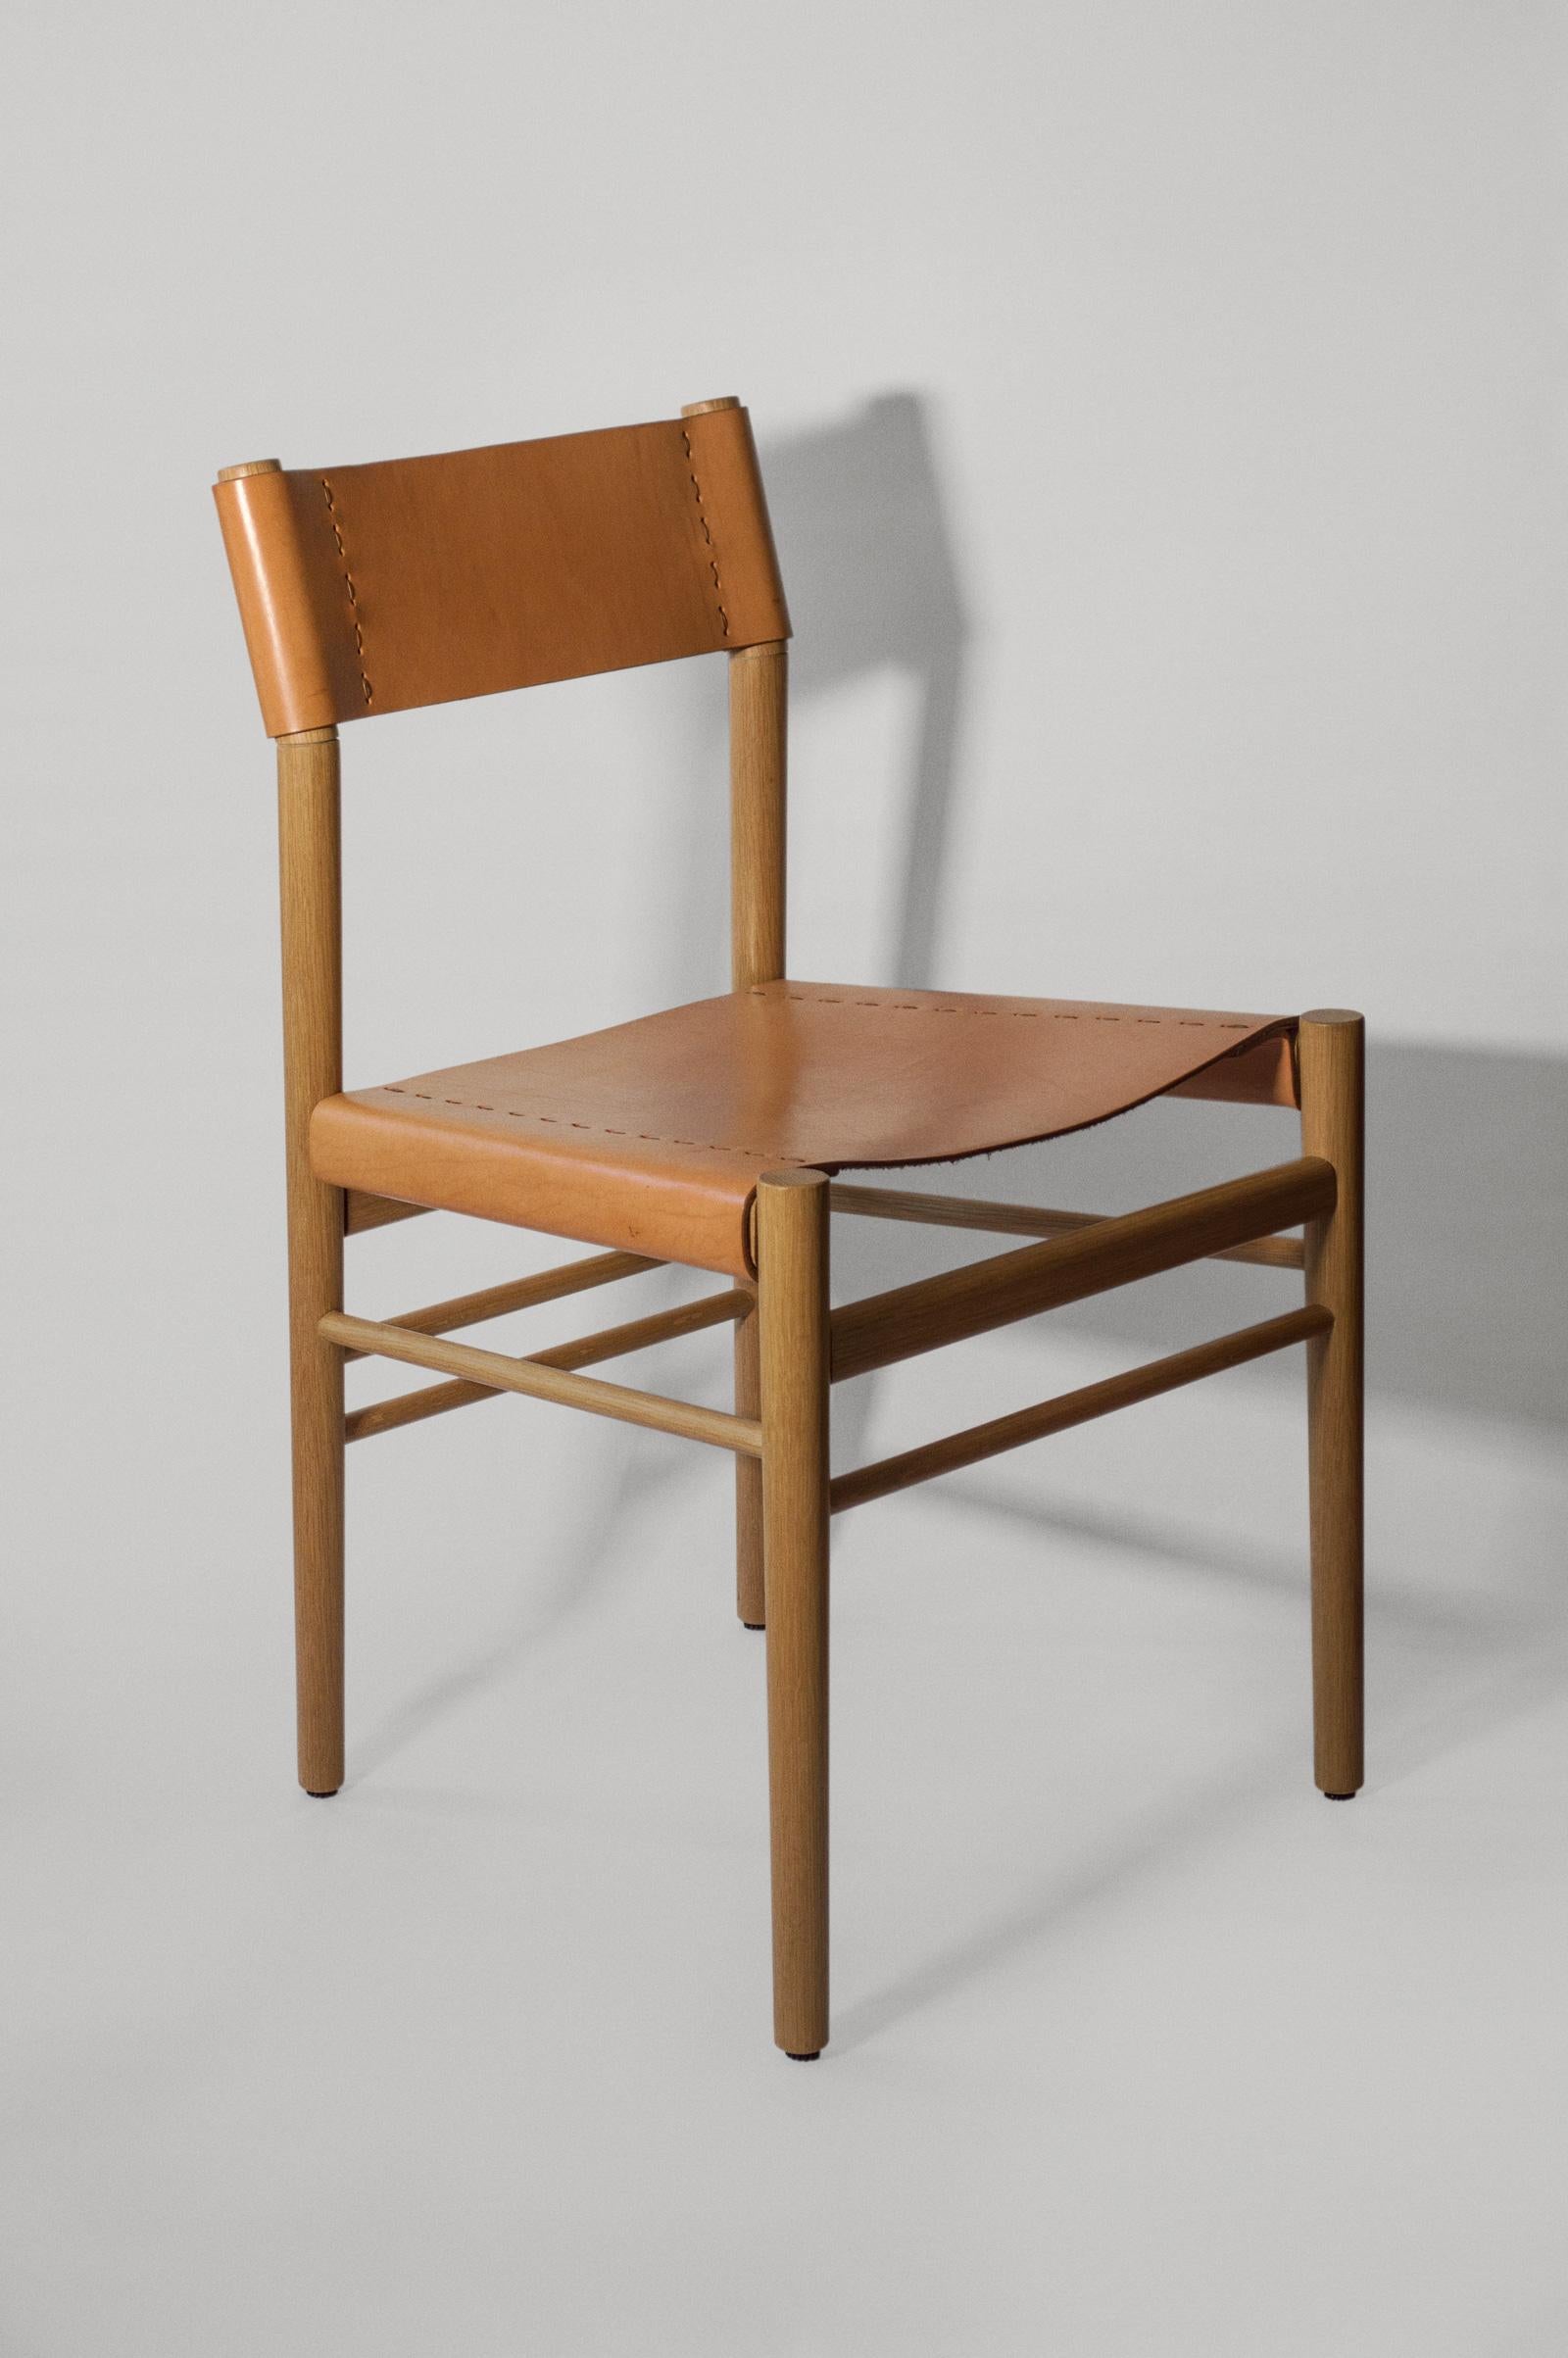 Scriba est une chaise de bureau ou de salle à manger apparemment simple et délicate, fabriquée selon les techniques traditionnelles japonaises de menuiserie et de sellerie artisanale : deux disciplines où la texture, le savoir-faire et la douceur